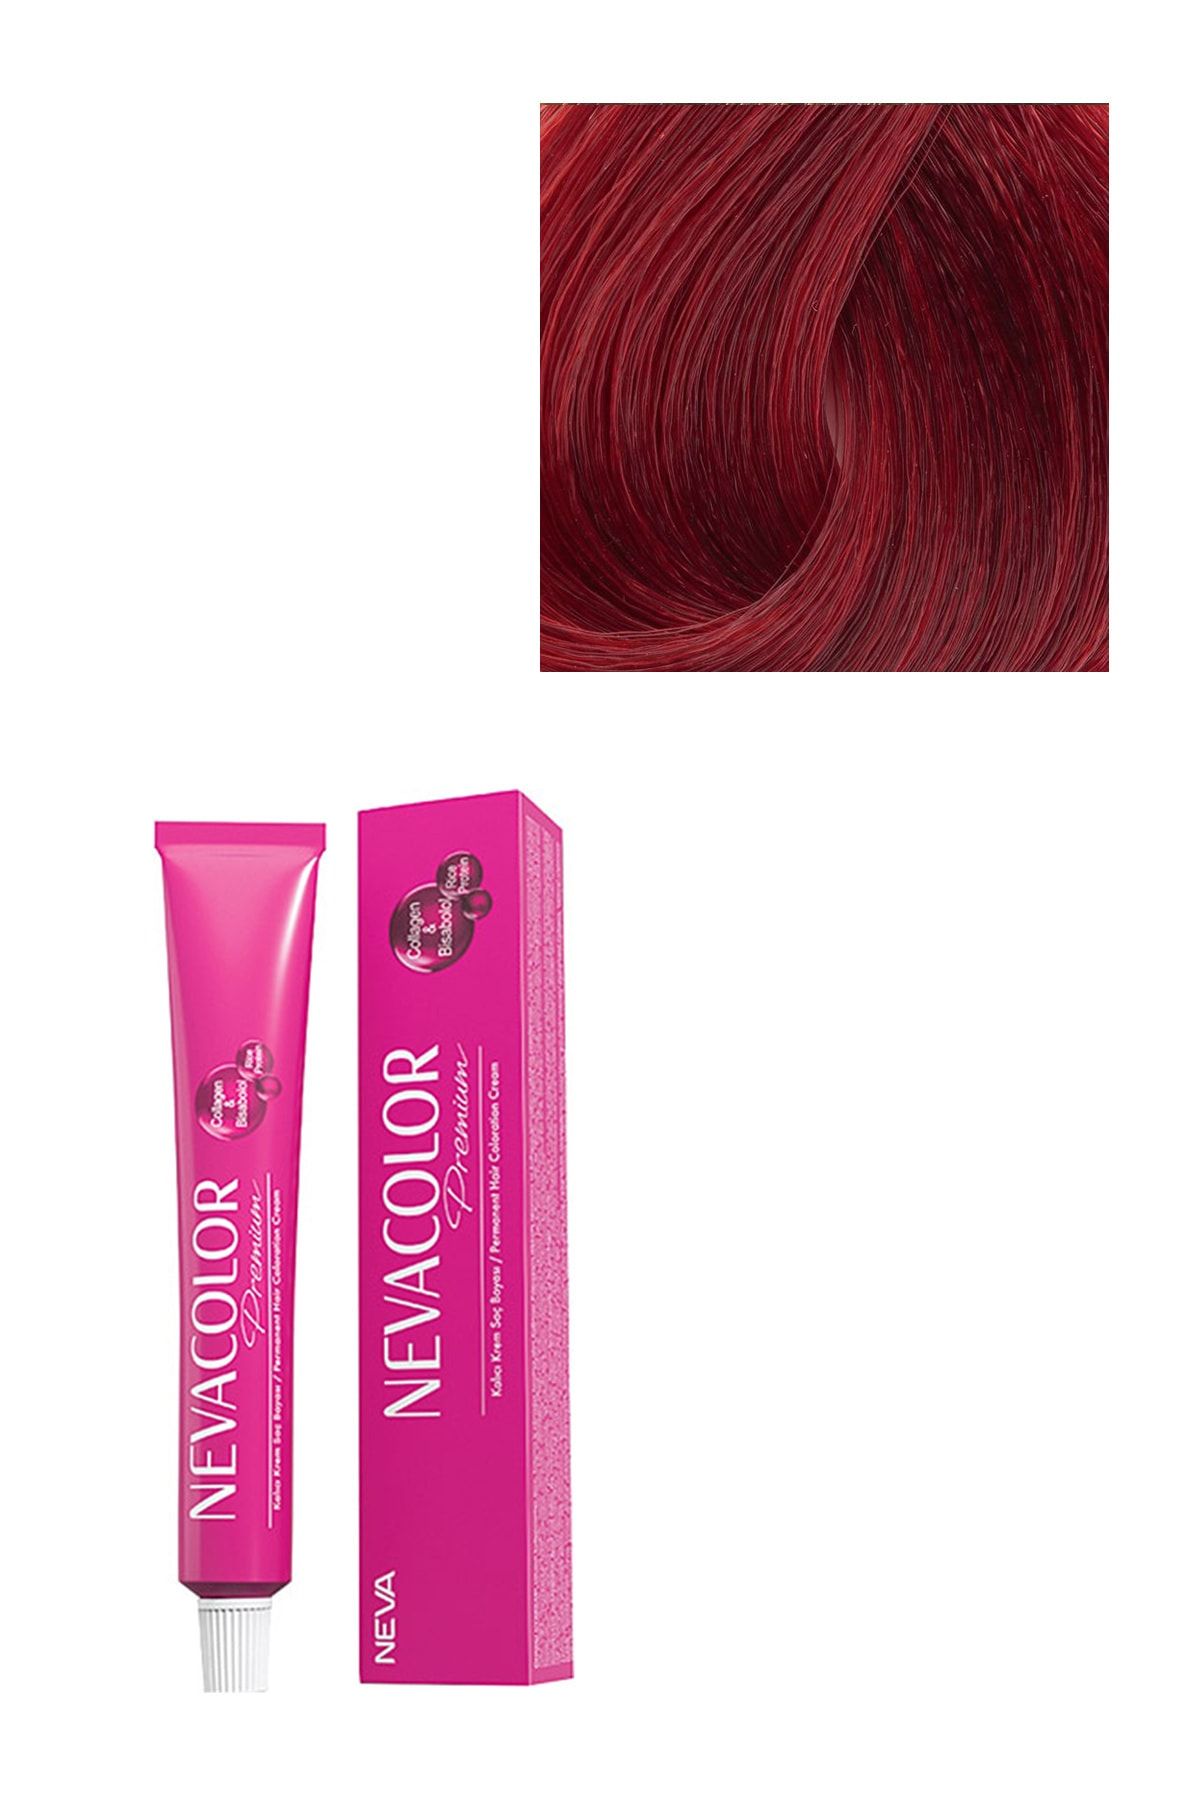 Neva Color Premium Kalıcı Saç Boyası Aşk Alevi 7.66